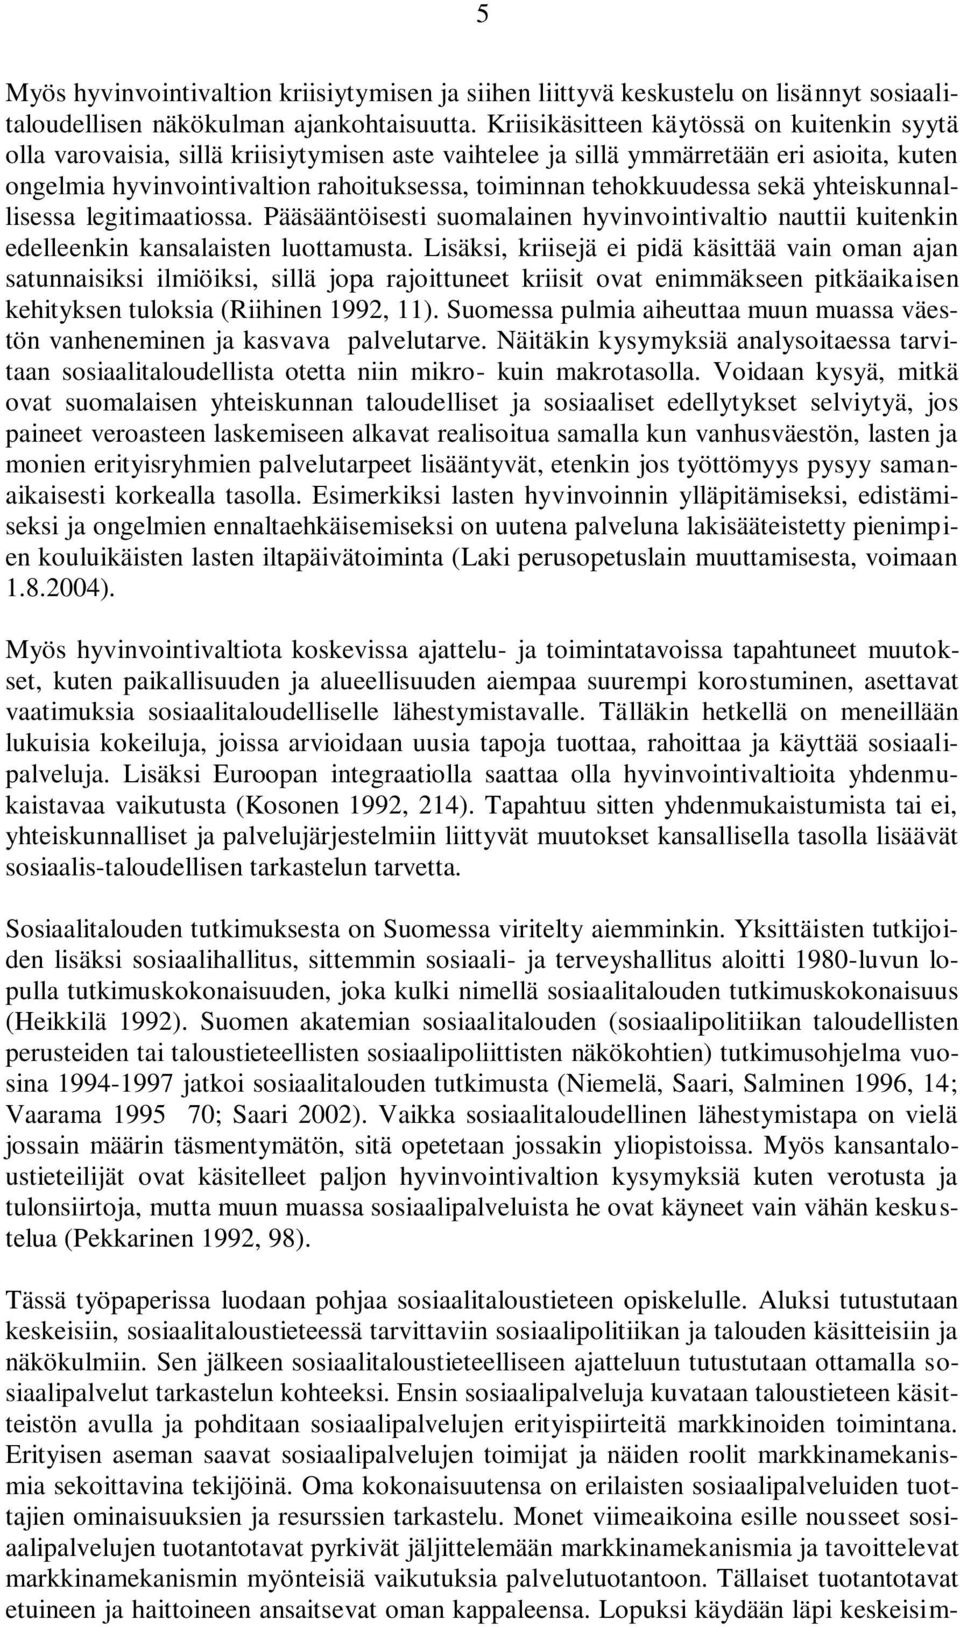 tehokkuudessa sekä yhteiskunnallisessa legitimaatiossa. Pääsääntöisesti suomalainen hyvinvointivaltio nauttii kuitenkin edelleenkin kansalaisten luottamusta.